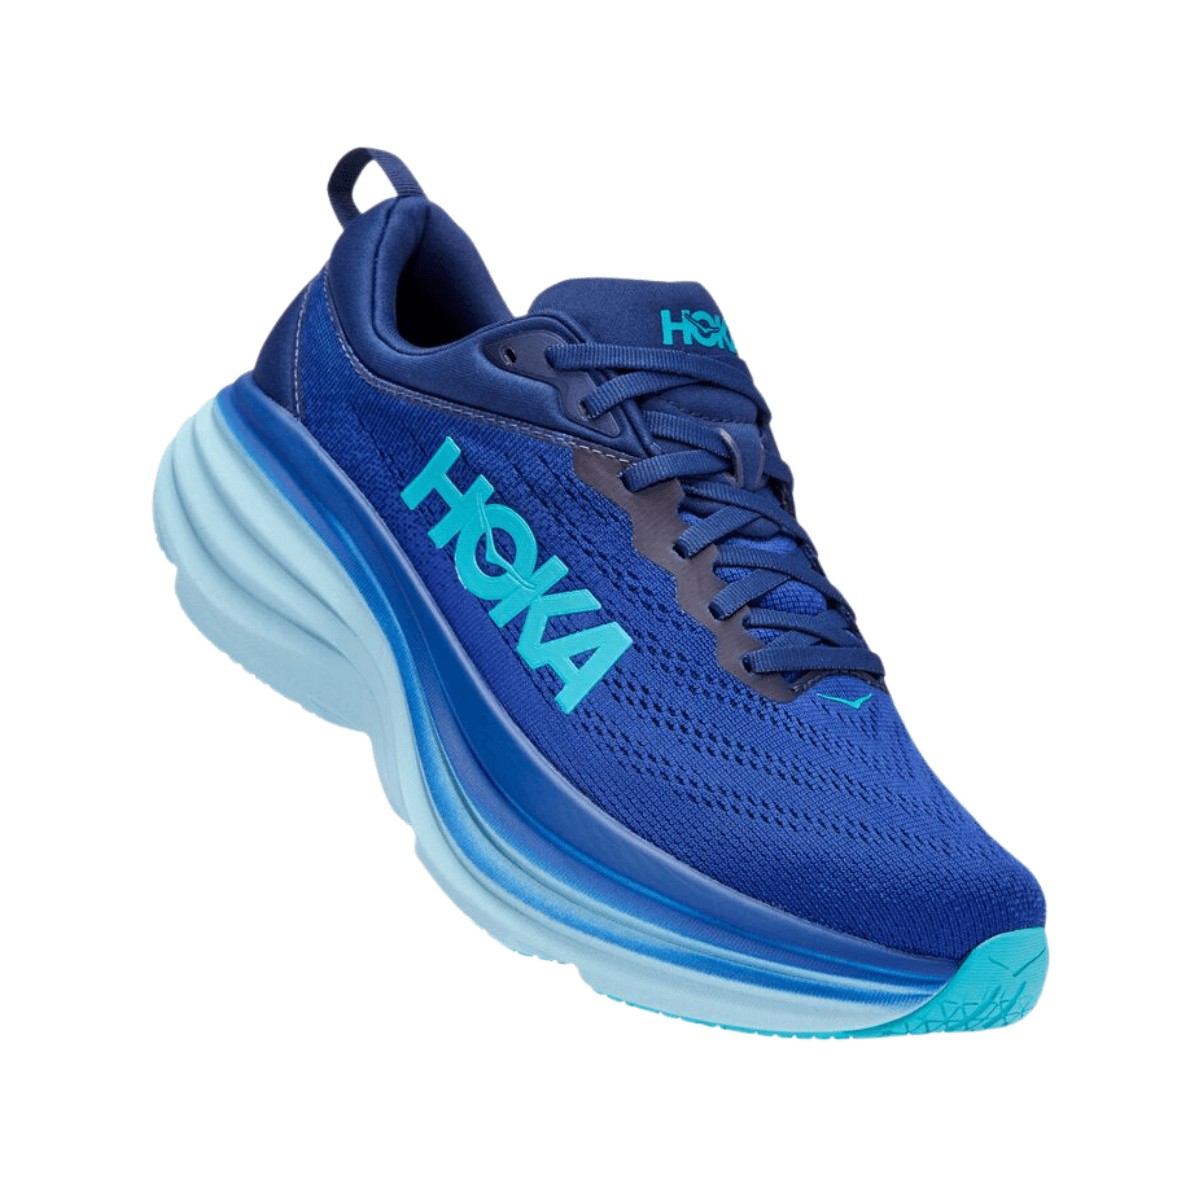 Shoes Hoka One One Bondi 8 Blue AW22, Size EU 42 2/3